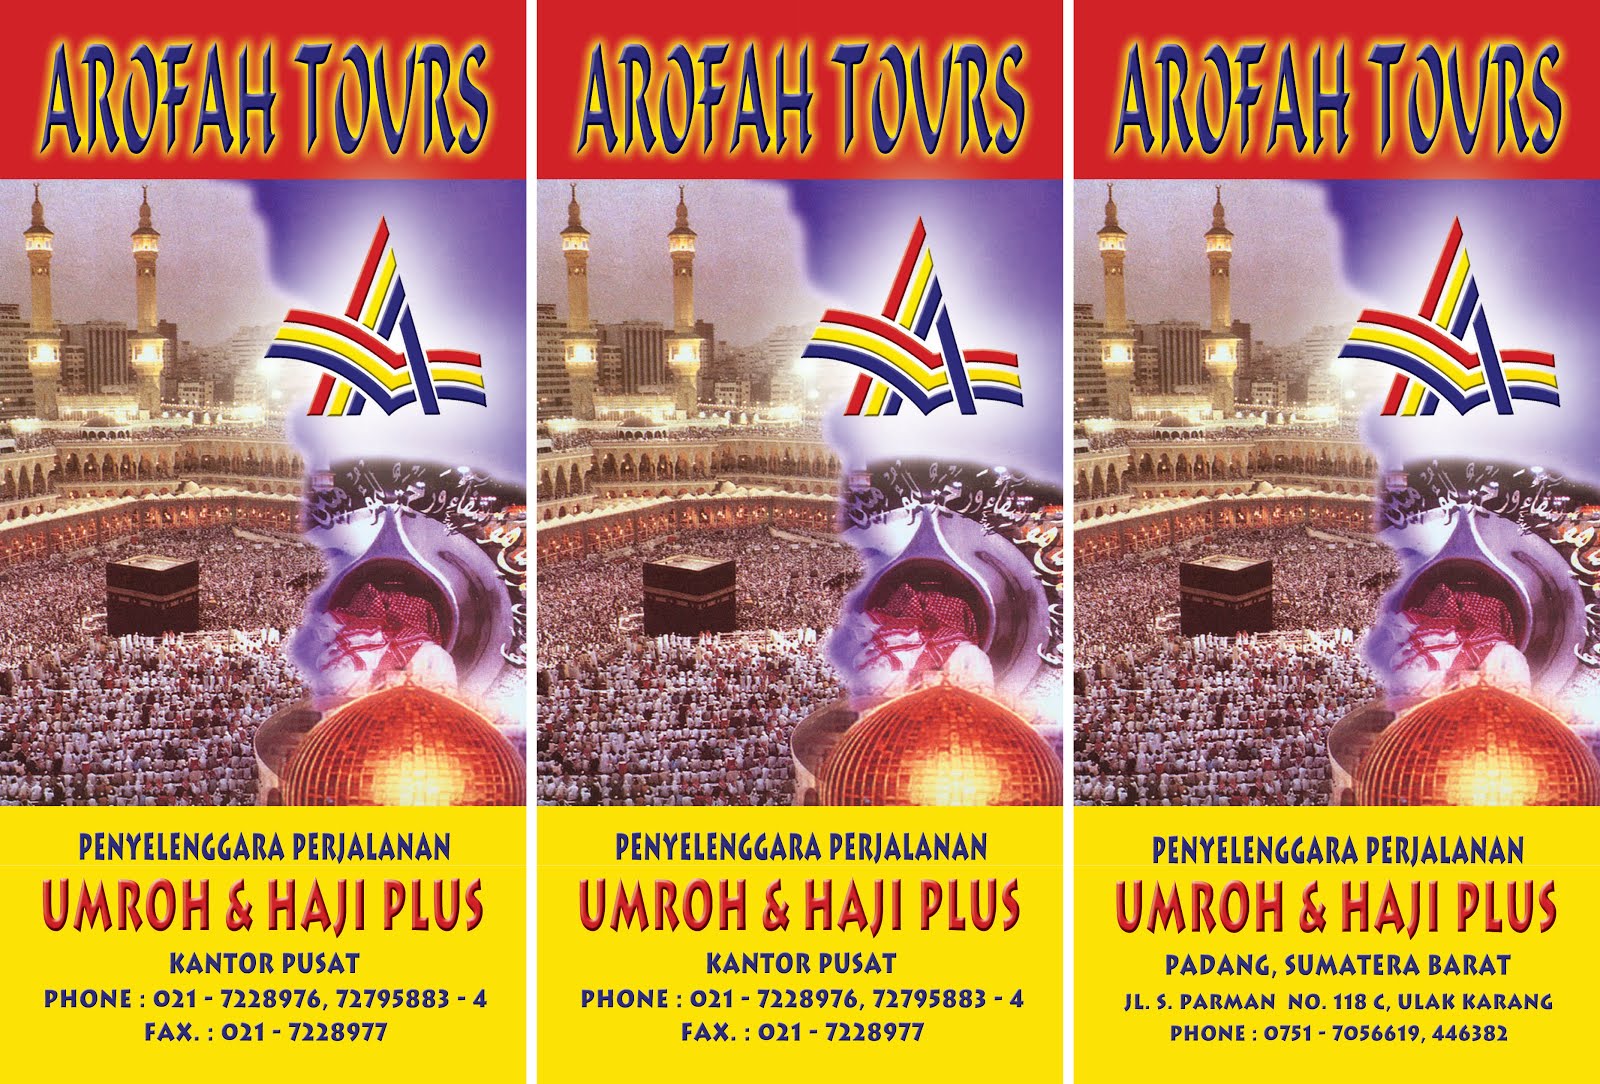 AROFAH TOURS 